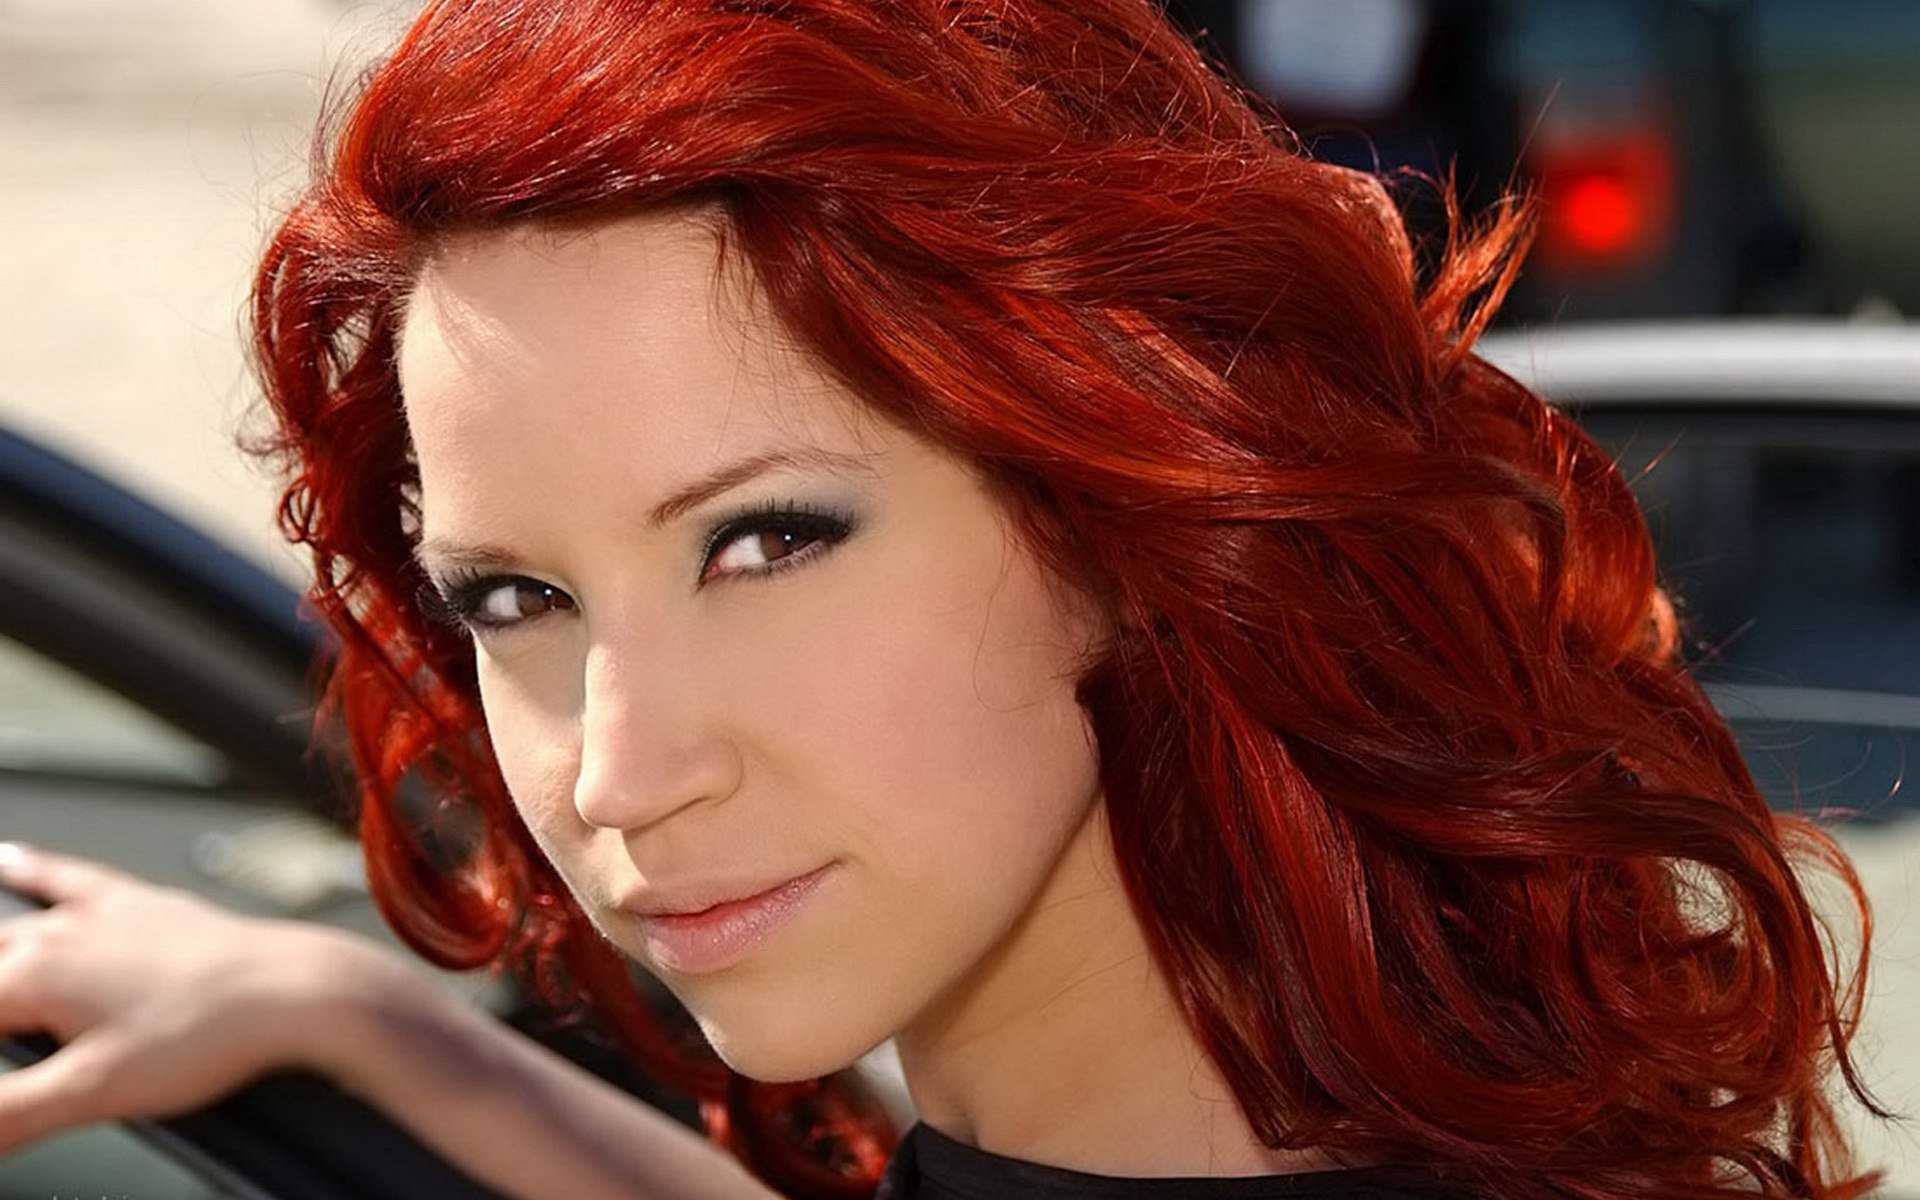 Рыжий цвет волос: оттенки, окрашивание и уход